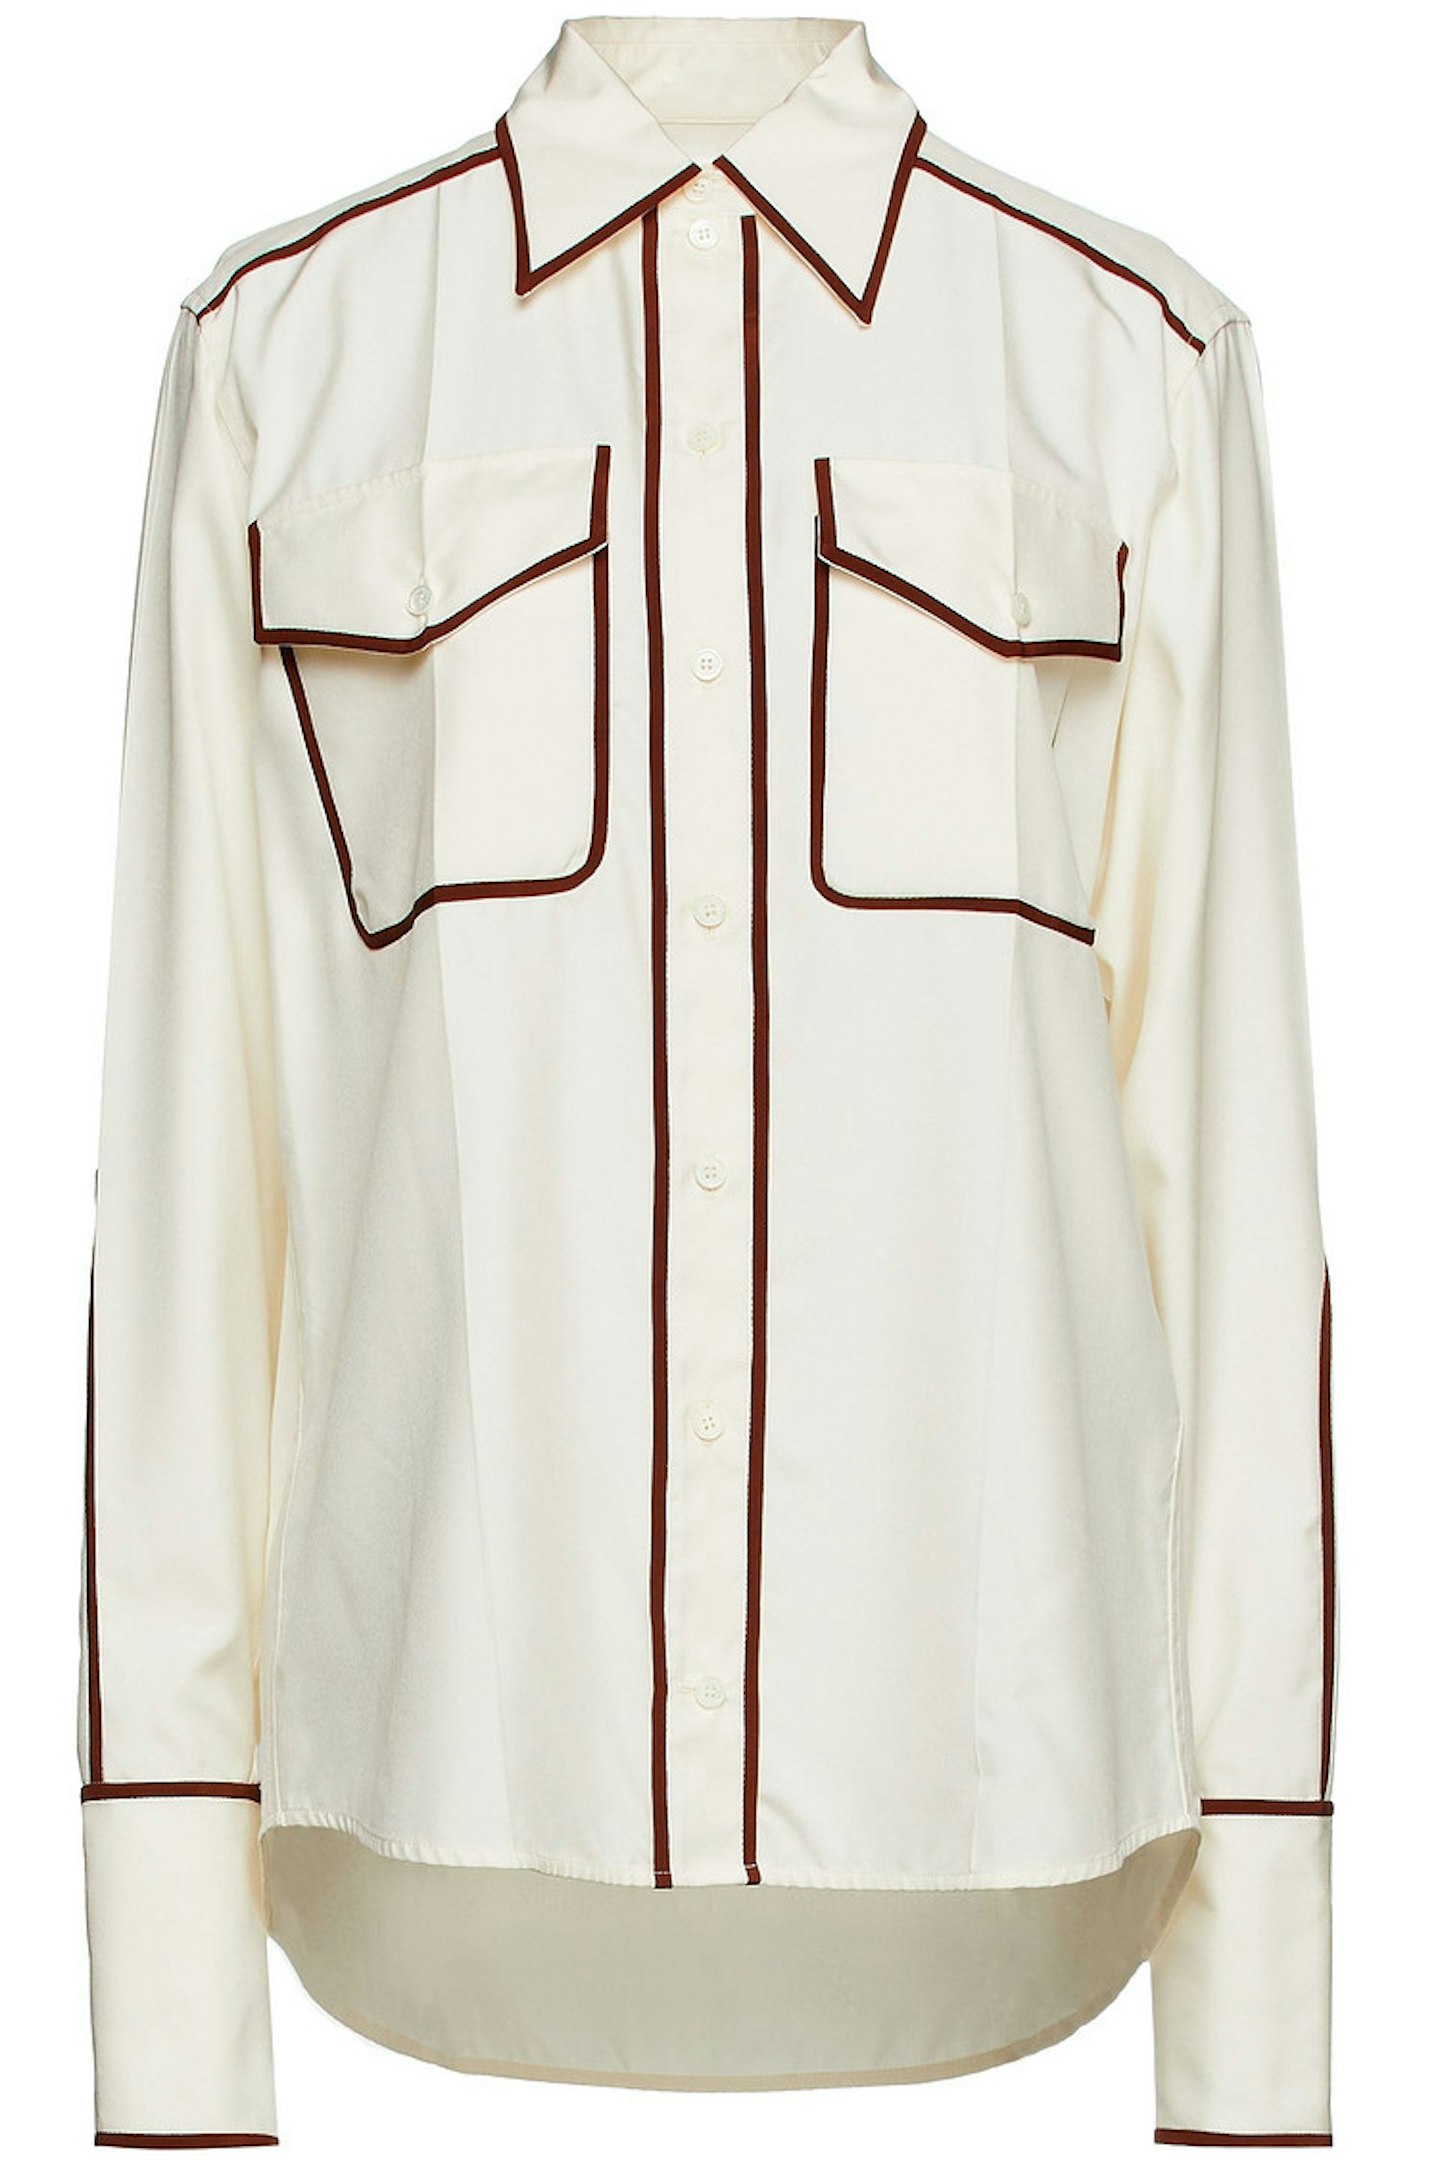 Victoria Beckham at The Outnet, Silk-poplin shirt, £358